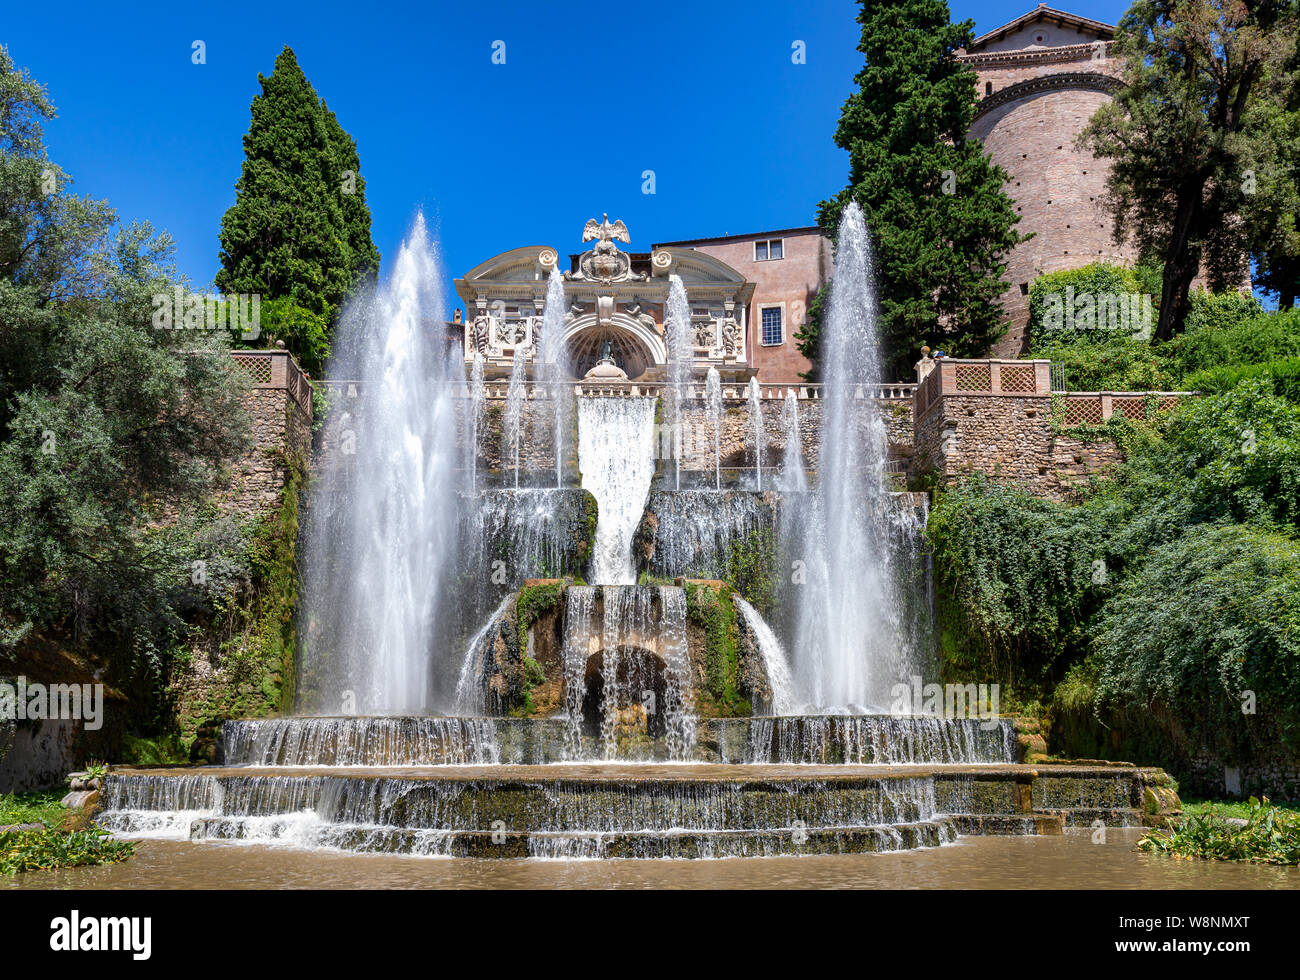 La fontaine de Neptune (premier plan) et de l'eau orgue (arrière-plan) dans les jardins de la Villa d'Este, Tivoli, lazio, Italie Banque D'Images